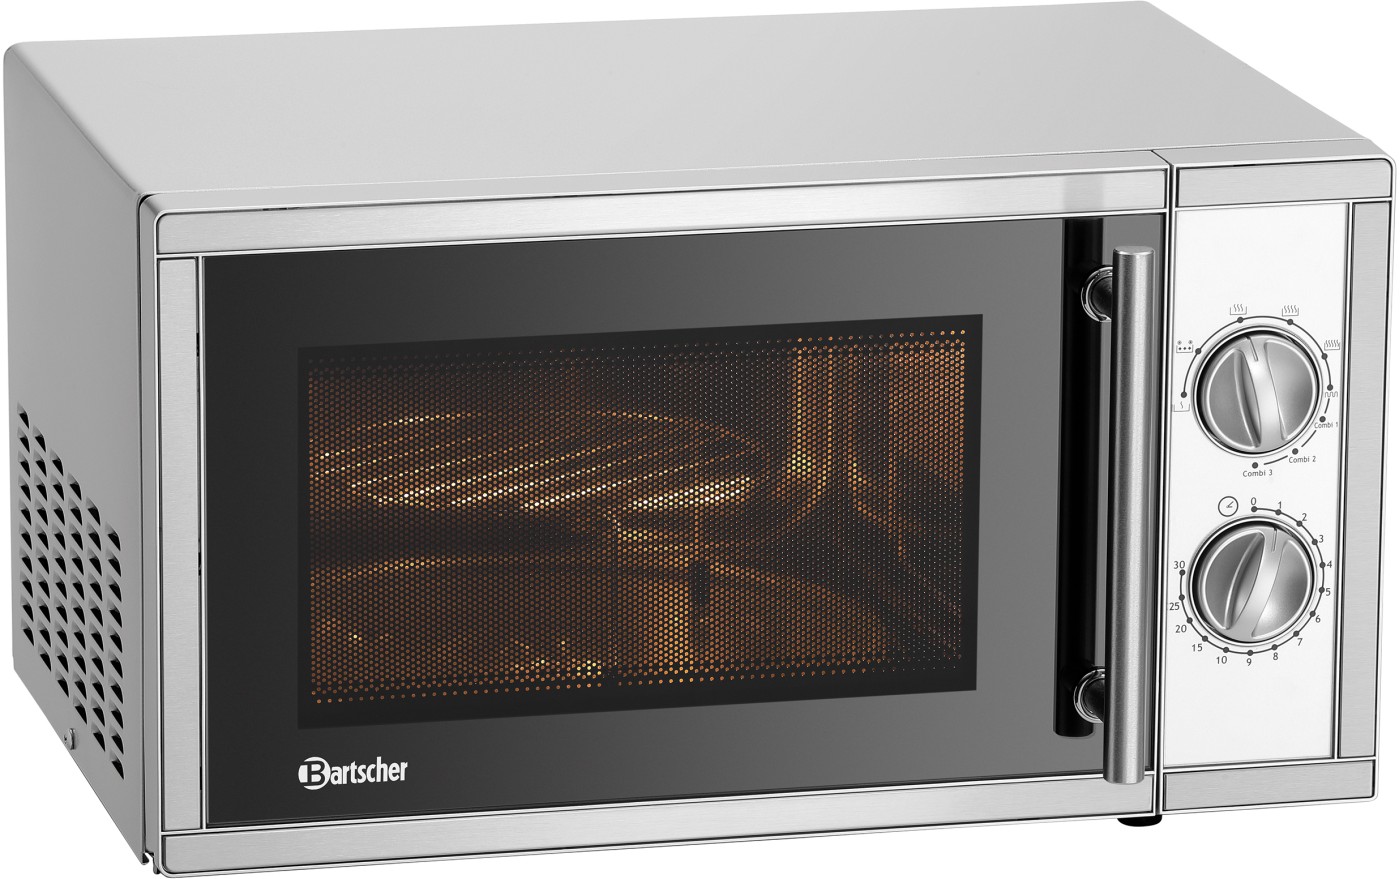  Bartscher Microwave 9231D-GR 